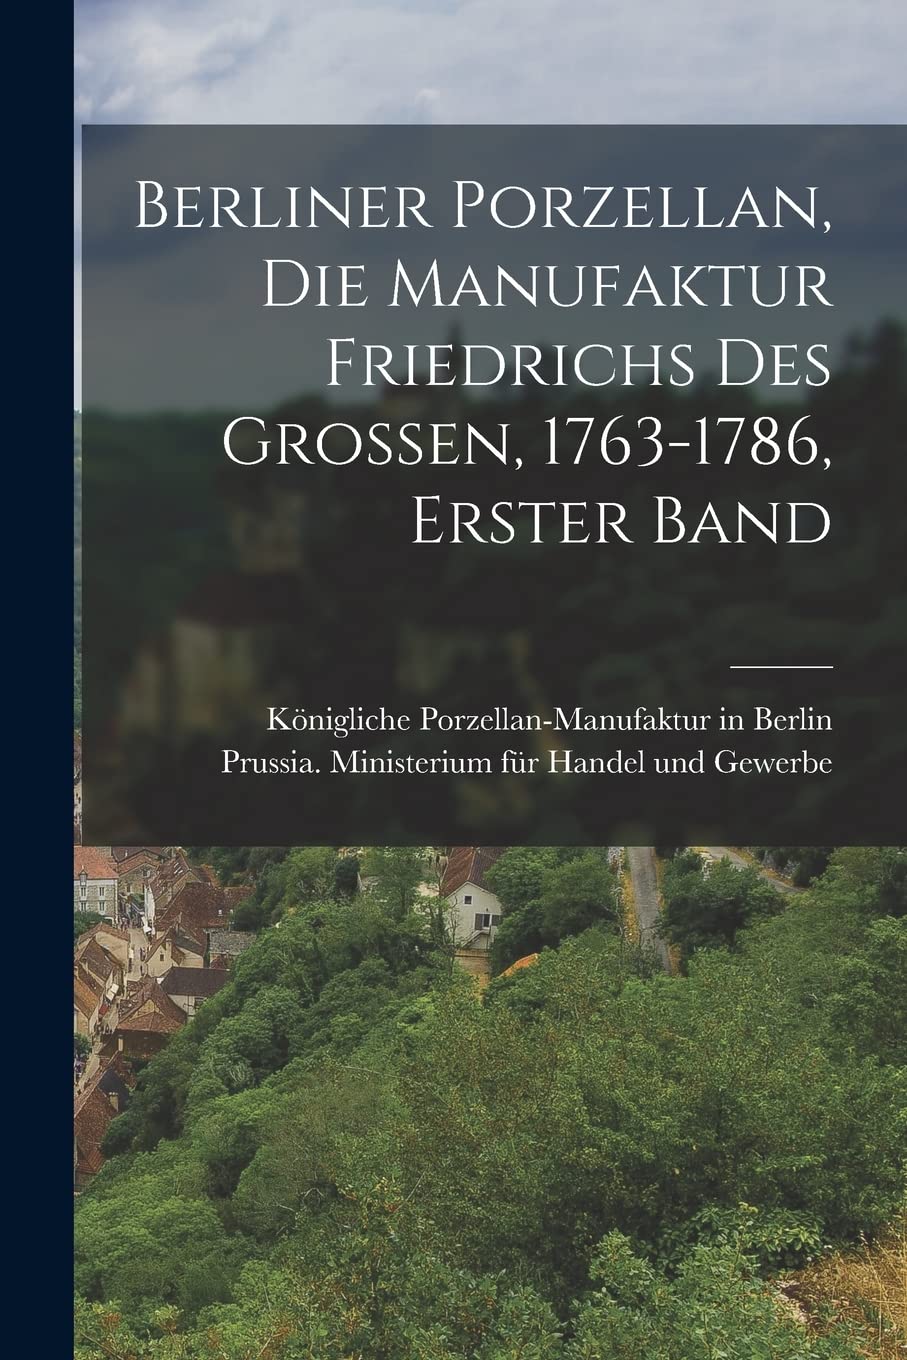 Berliner Porzellan, die Manufaktur Friedrichs des Grossen, 1763-1786, Erster Band